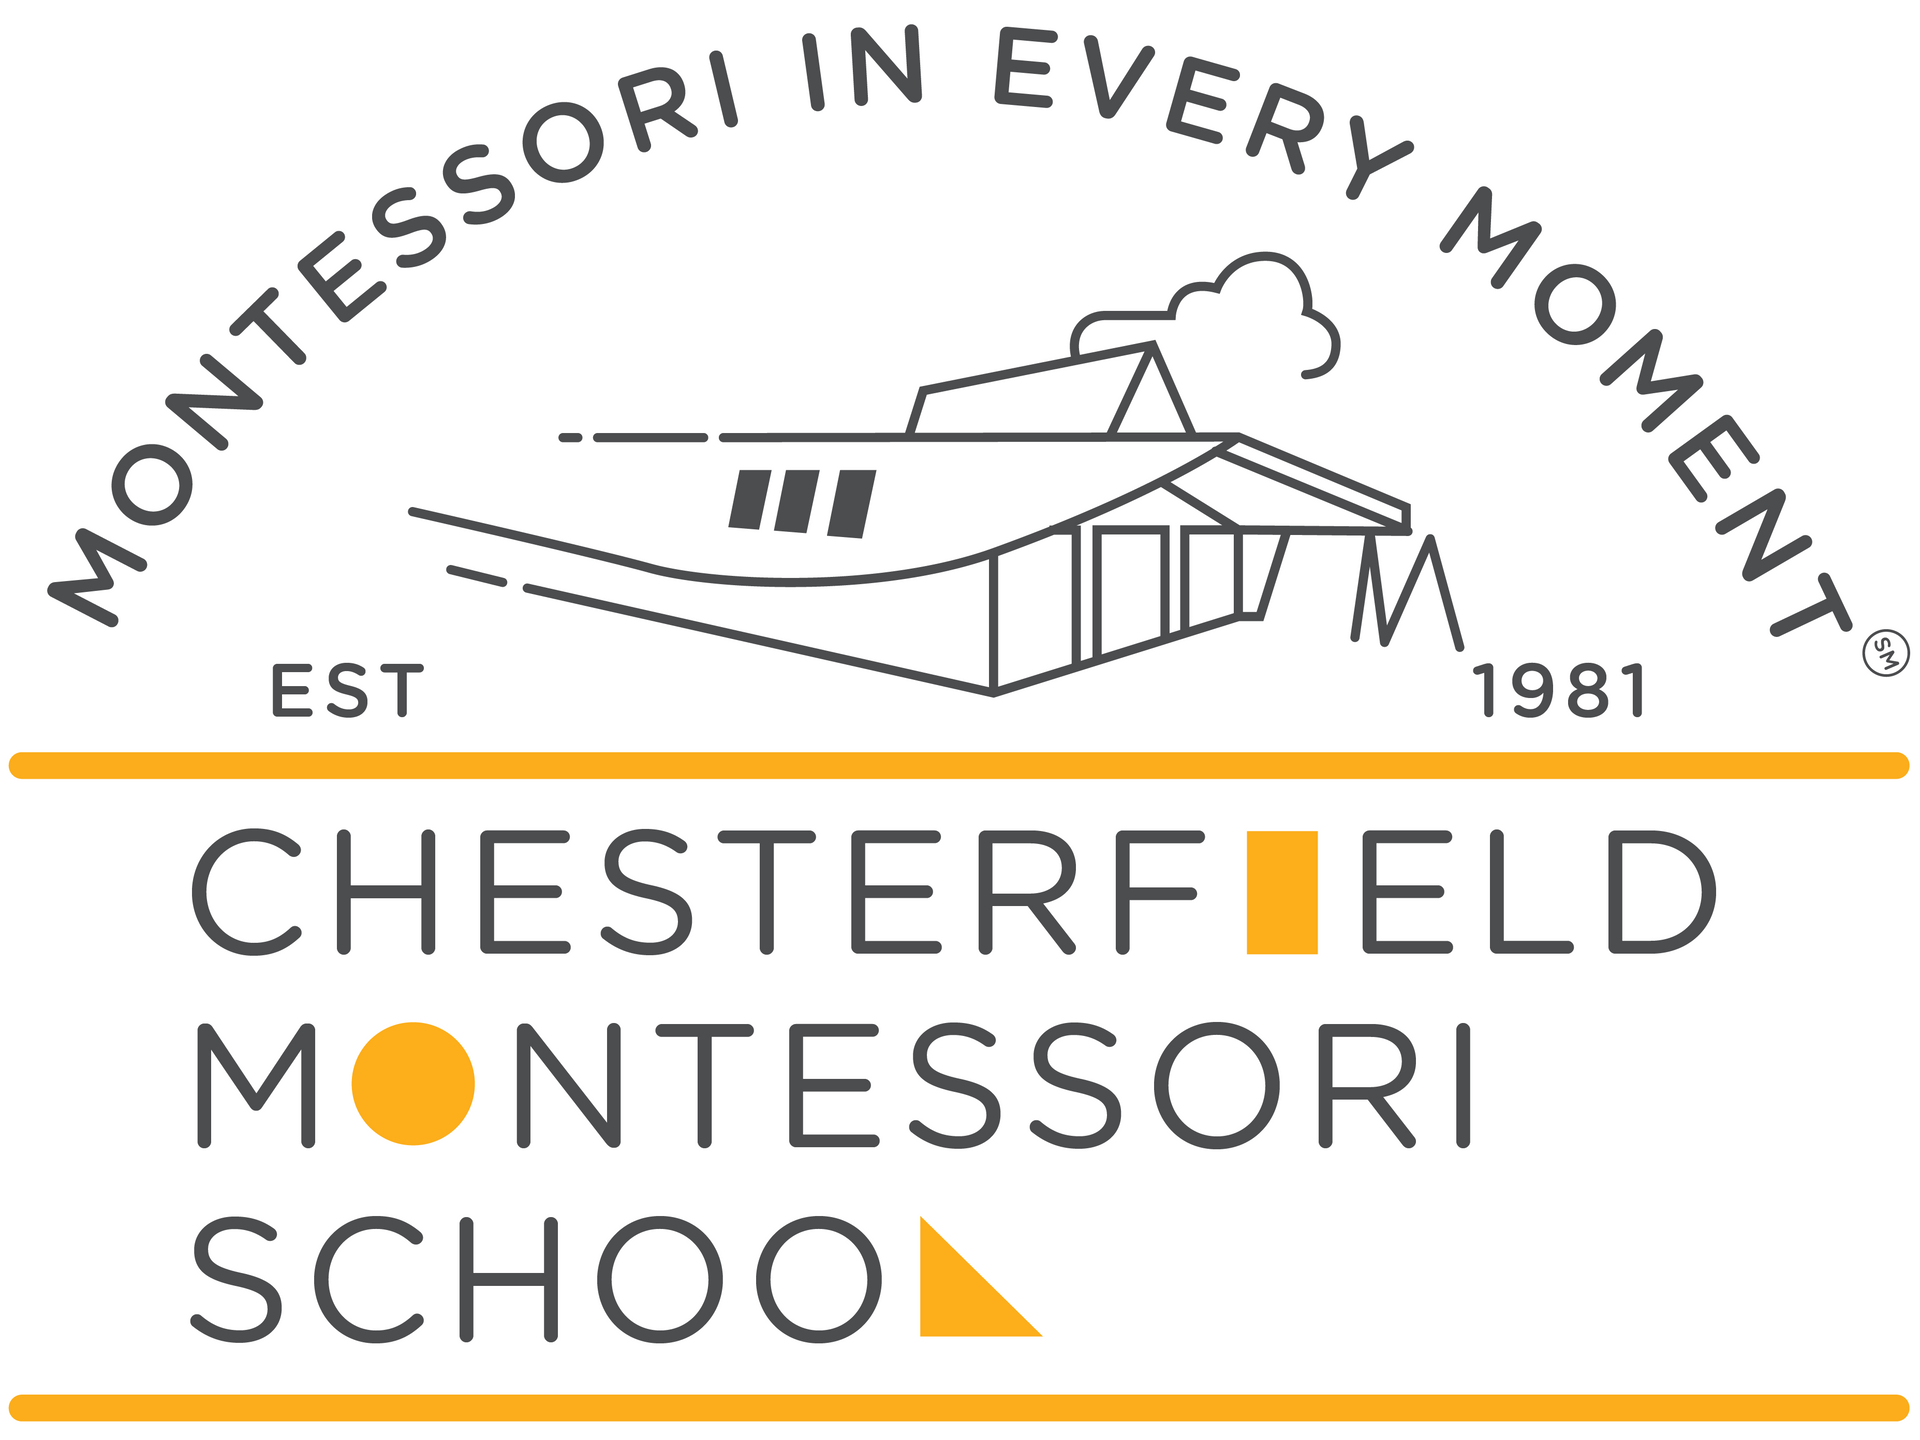 Chesterfield Montessori School 